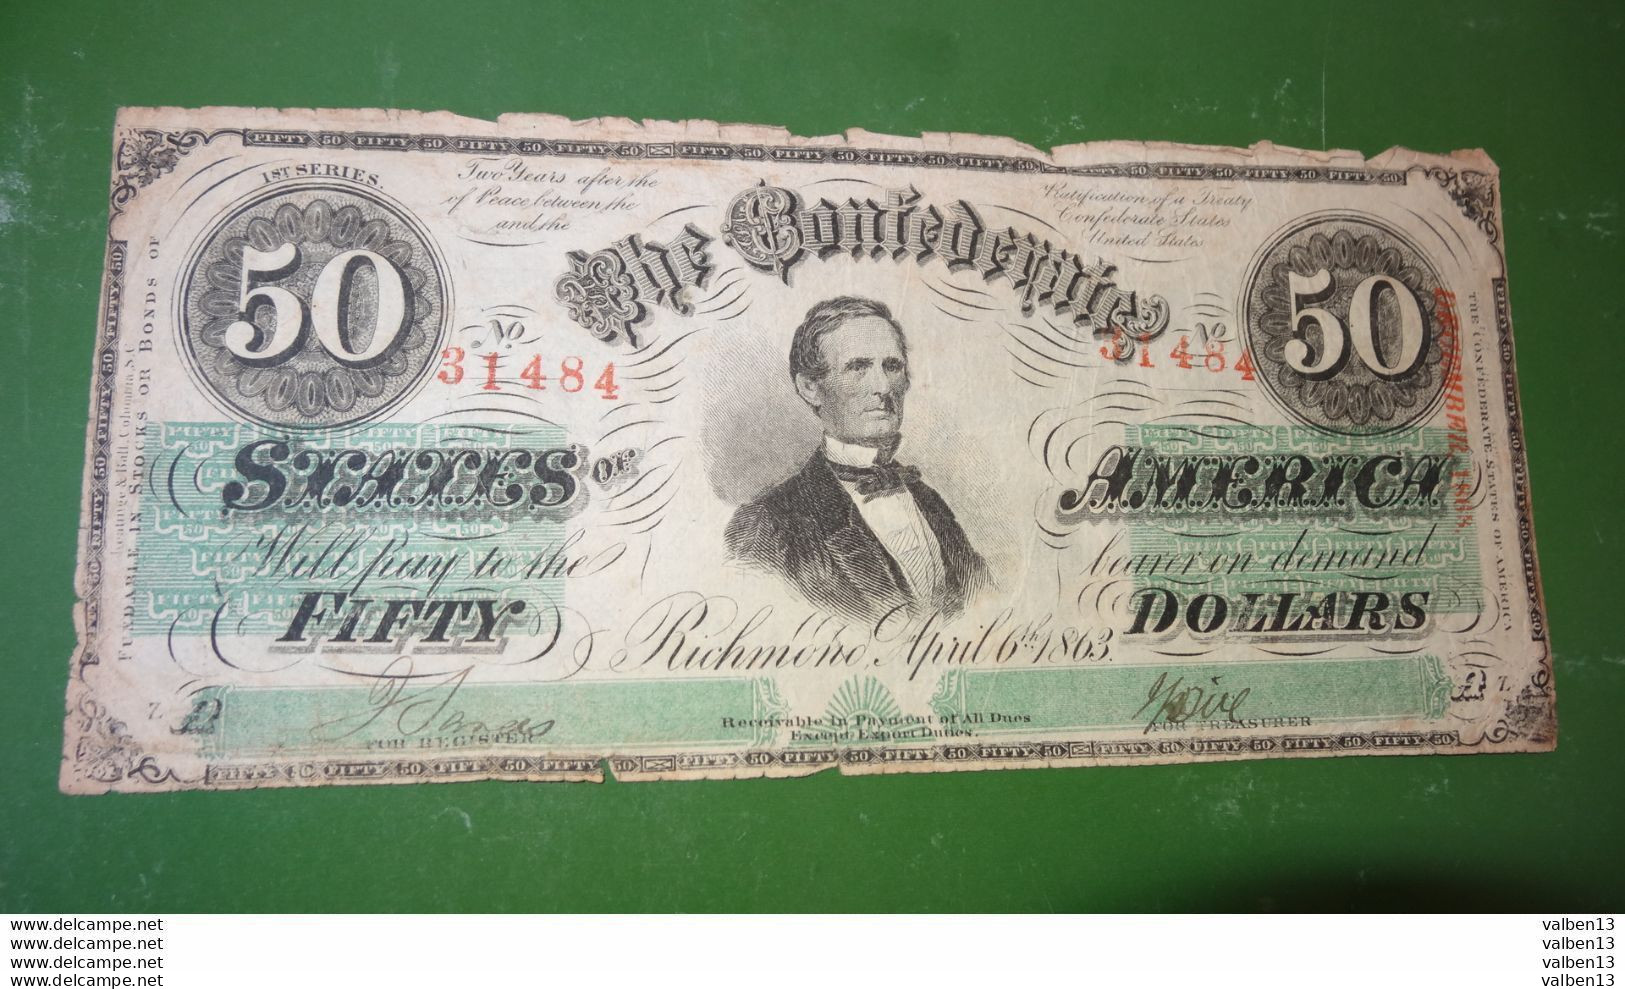 ETATS UNIS: Confederates States Of America. N° 31484, 50 Dollars. Date 06/04/1863 ........ Env.2 - Divisa Confederada (1861-1864)